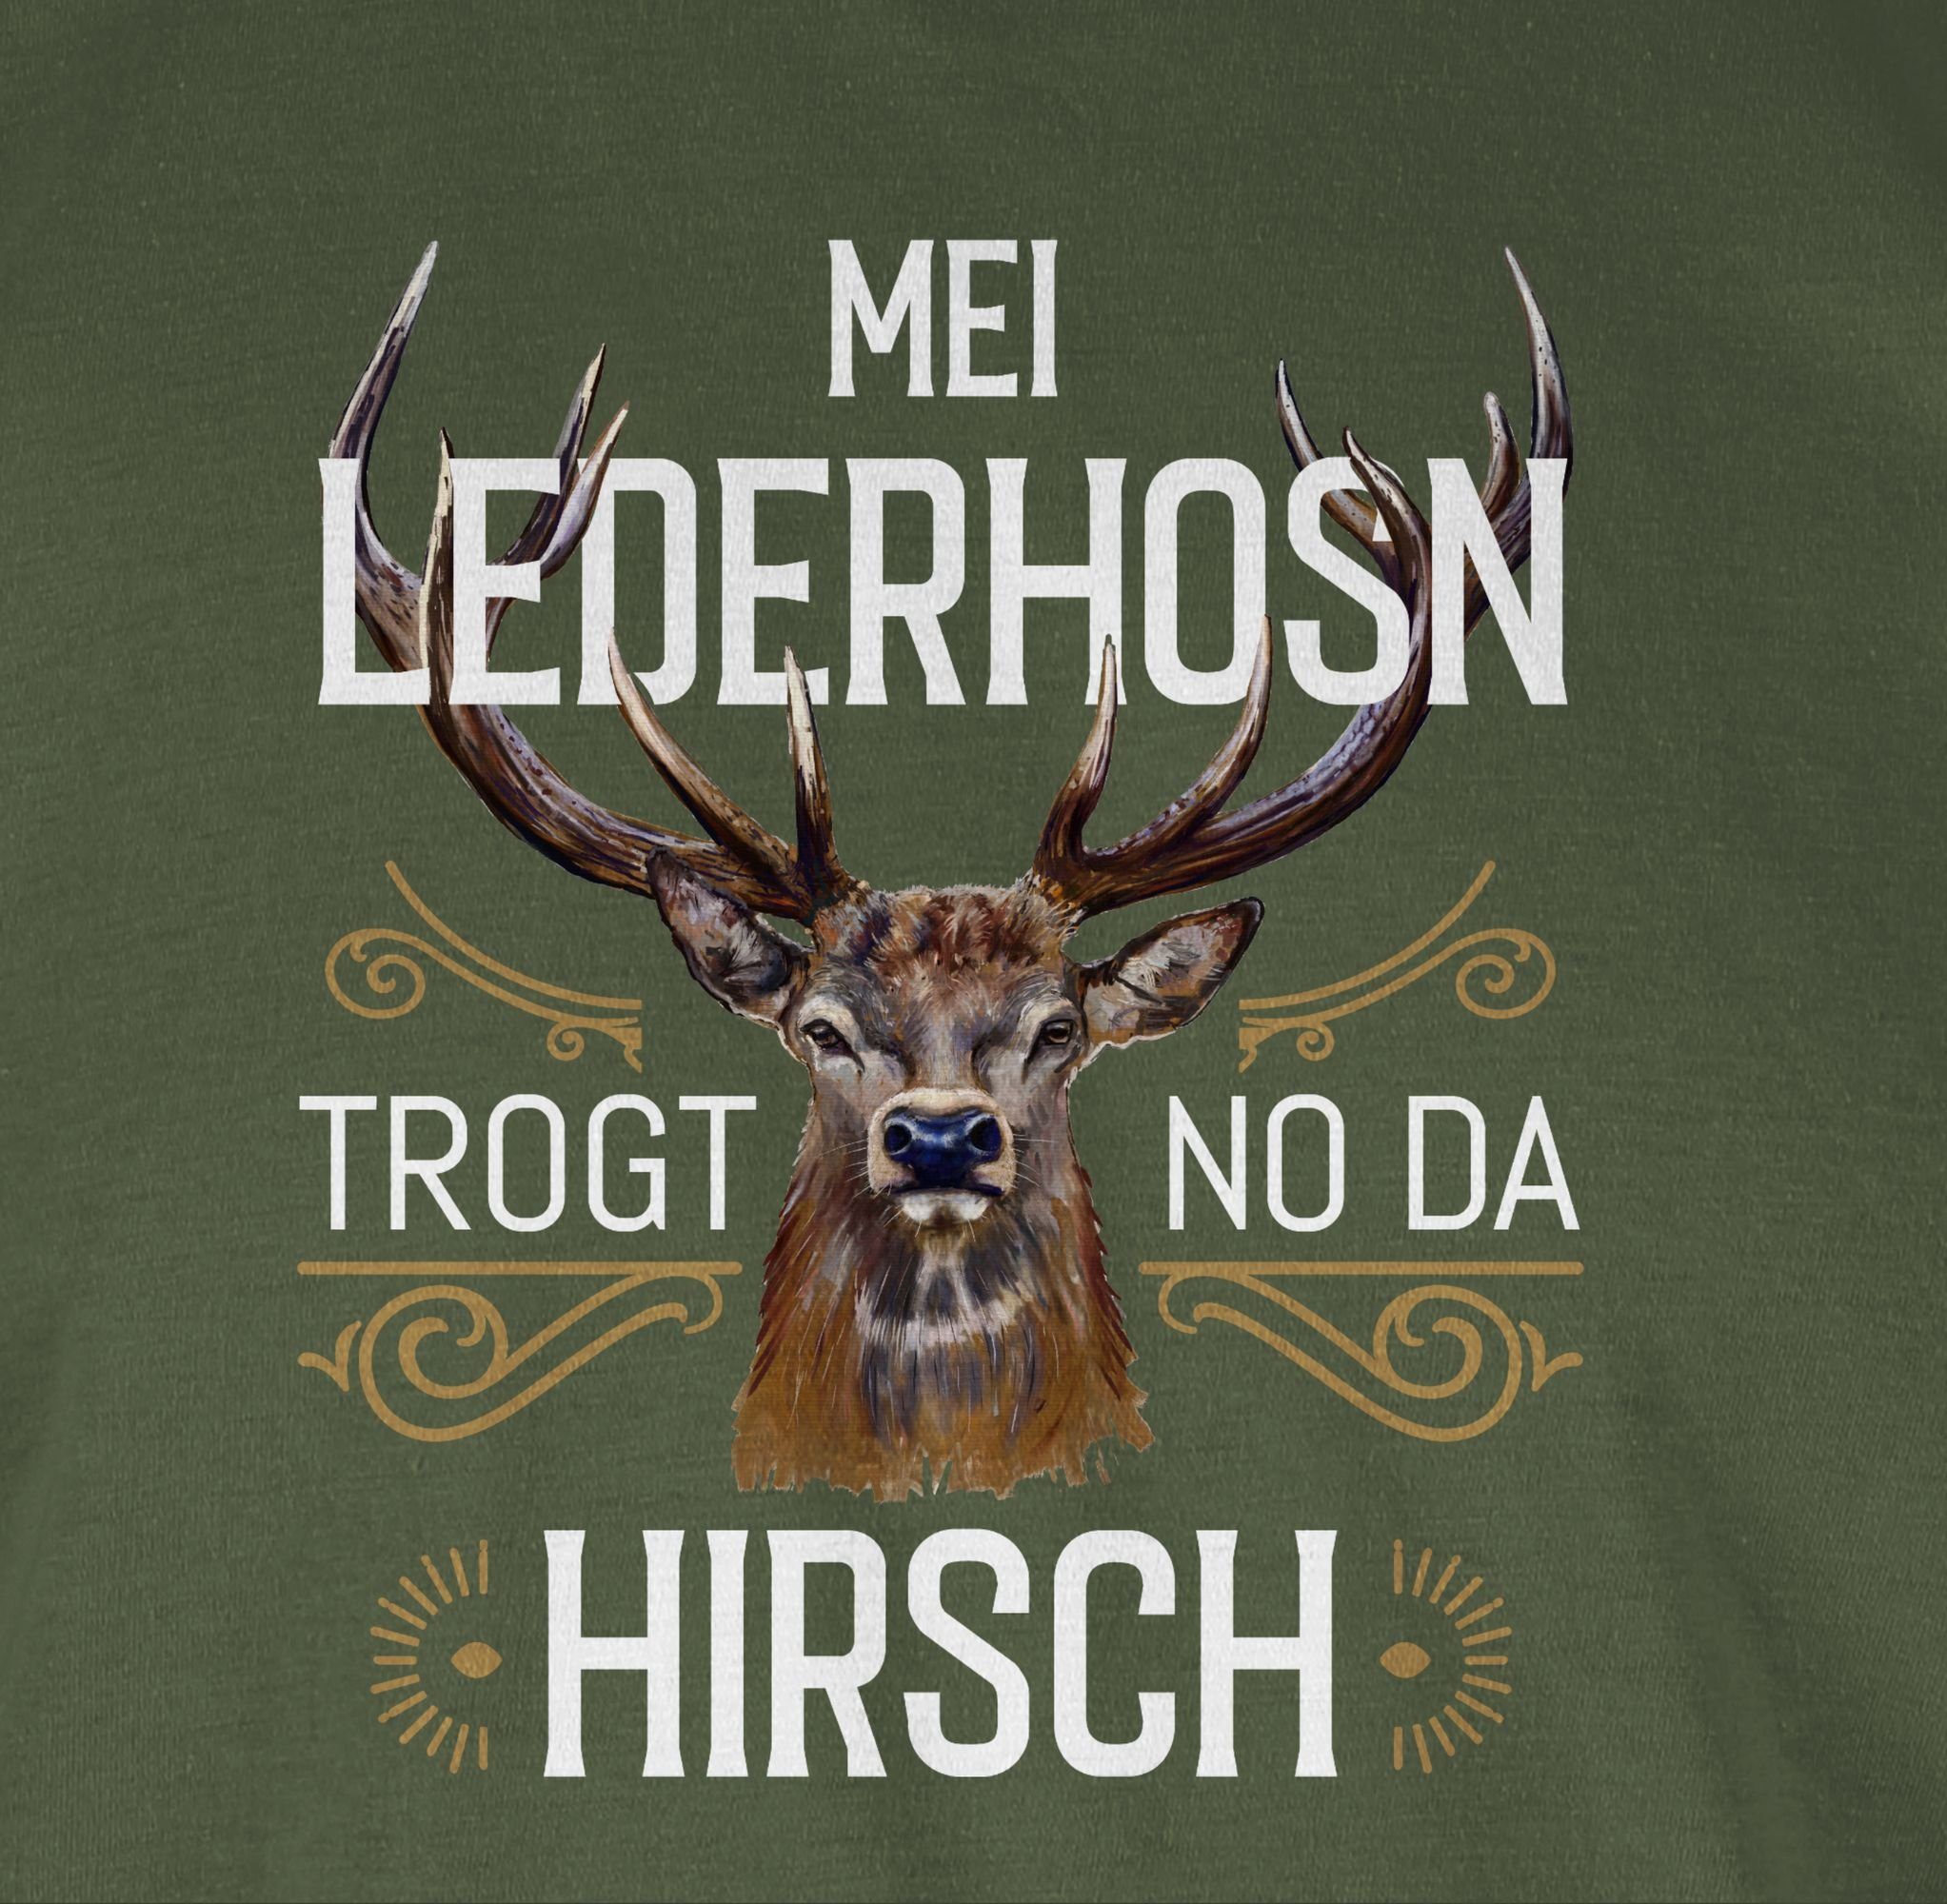 Lederhosn Army Herren no Oktoberfest Shirtracer Grün weiß Mode trogt T-Shirt da braun Hirsch Mei für 02 -